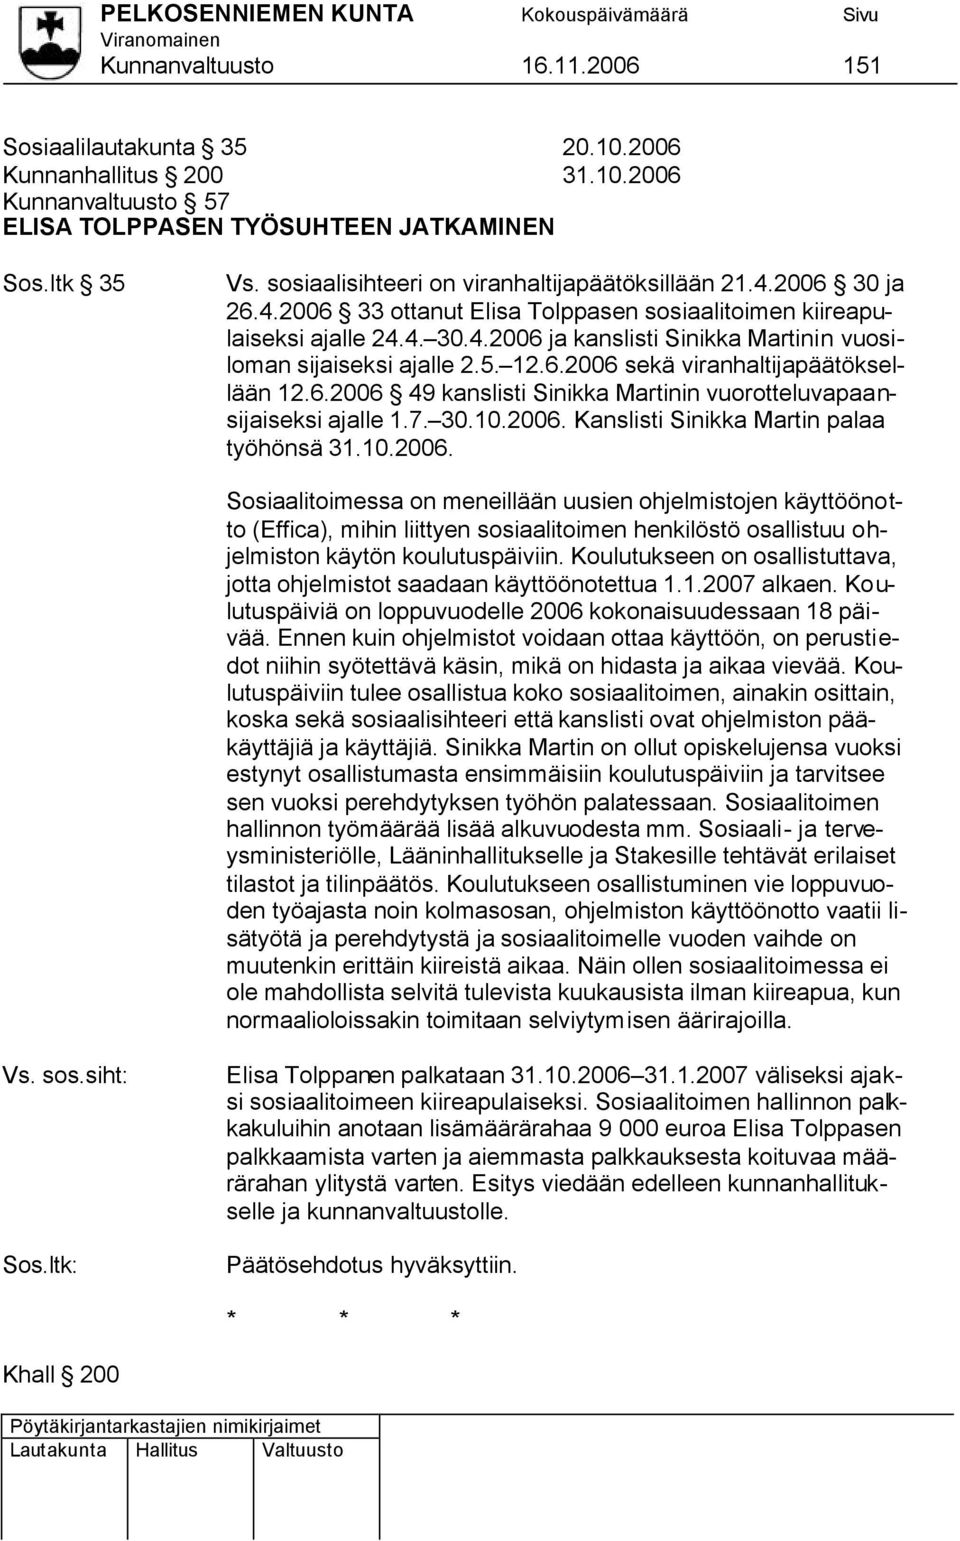 5. 12.6.2006 sekä viranhaltijapäätöksellään 12.6.2006 49 kanslisti Sinikka Martinin vuorotteluvapaansijaiseksi ajalle 1.7. 30.10.2006. Kanslisti Sinikka Martin palaa työhönsä 31.10.2006. Sosiaalitoimessa on meneillään uusien ohjelmistojen käyttöönotto (Effica), mihin liittyen sosiaalitoimen henkilöstö osallistuu ohjelmiston käytön koulutuspäiviin.